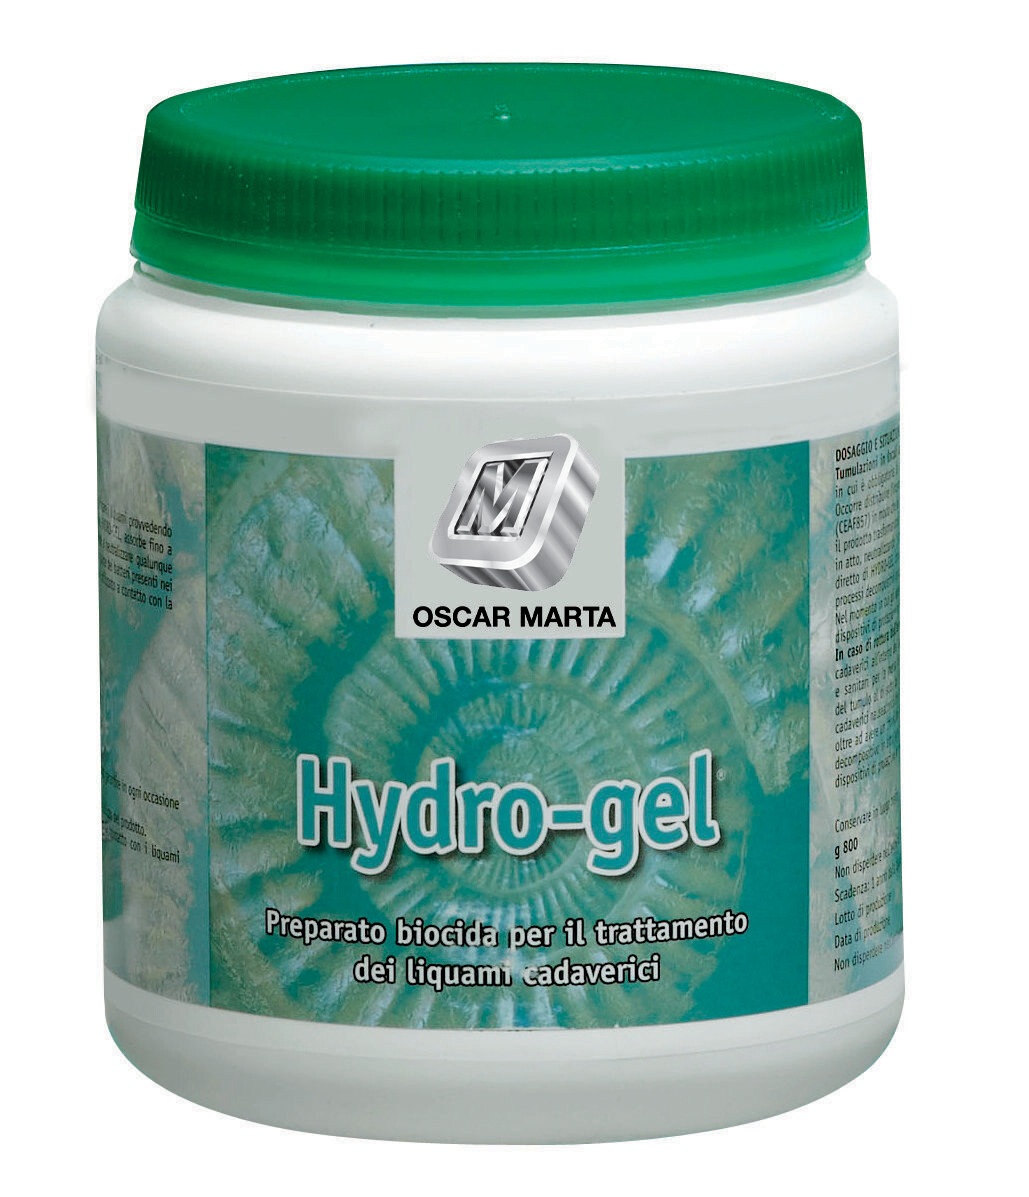 Hydro gel